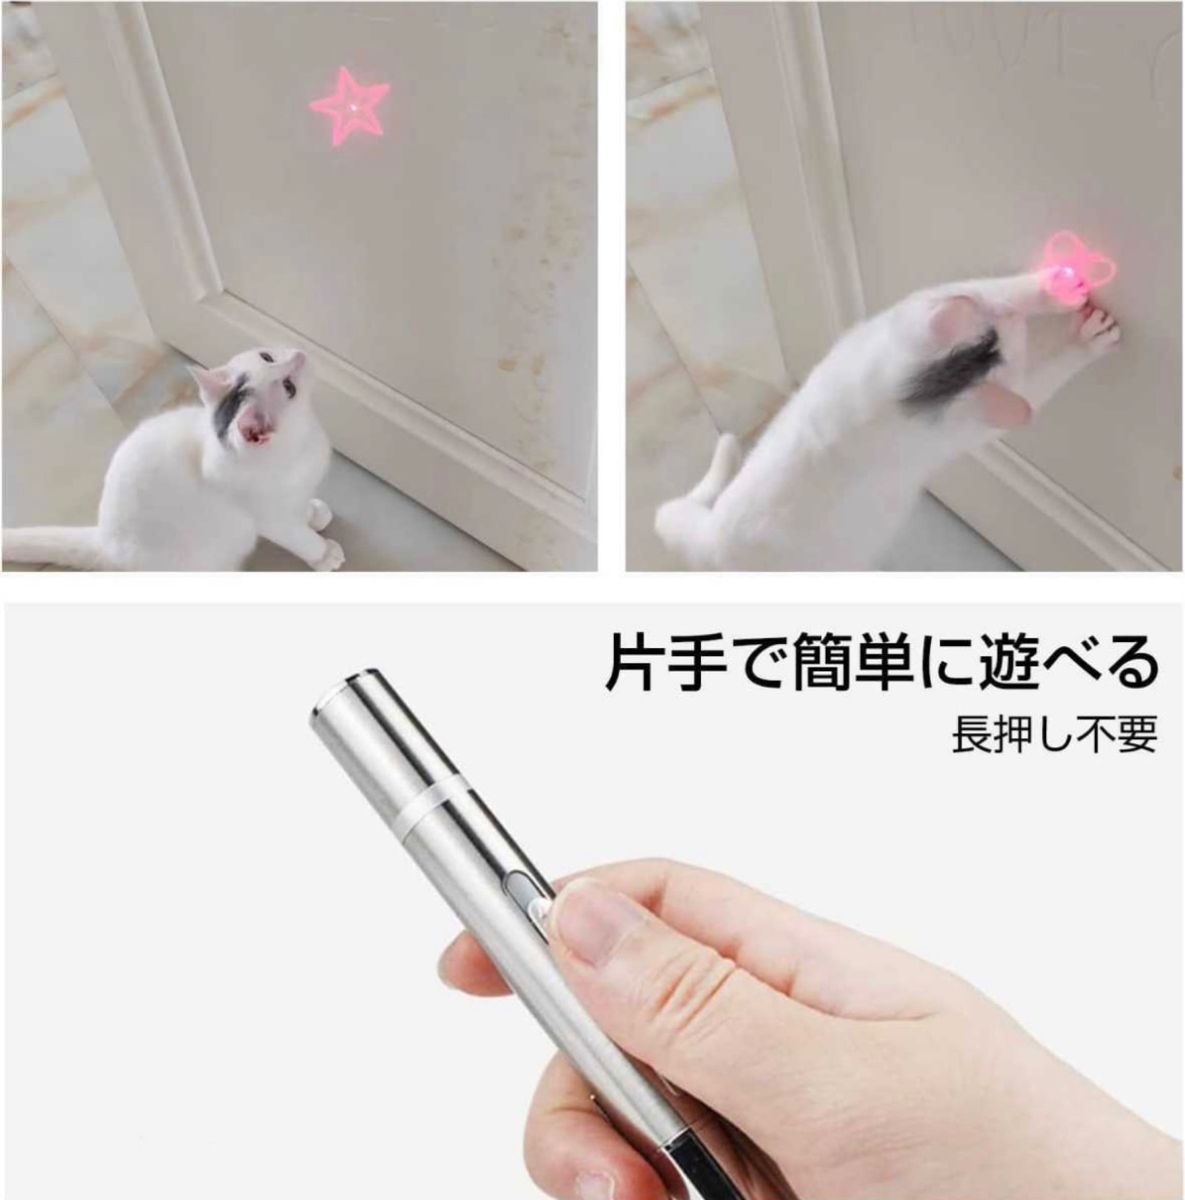 猫おもちゃ 充電式 USB 運動不足解消 おもちゃ レーザーポインター　LED ライト 猫じゃらし ネコ 玩具 ストレス解消